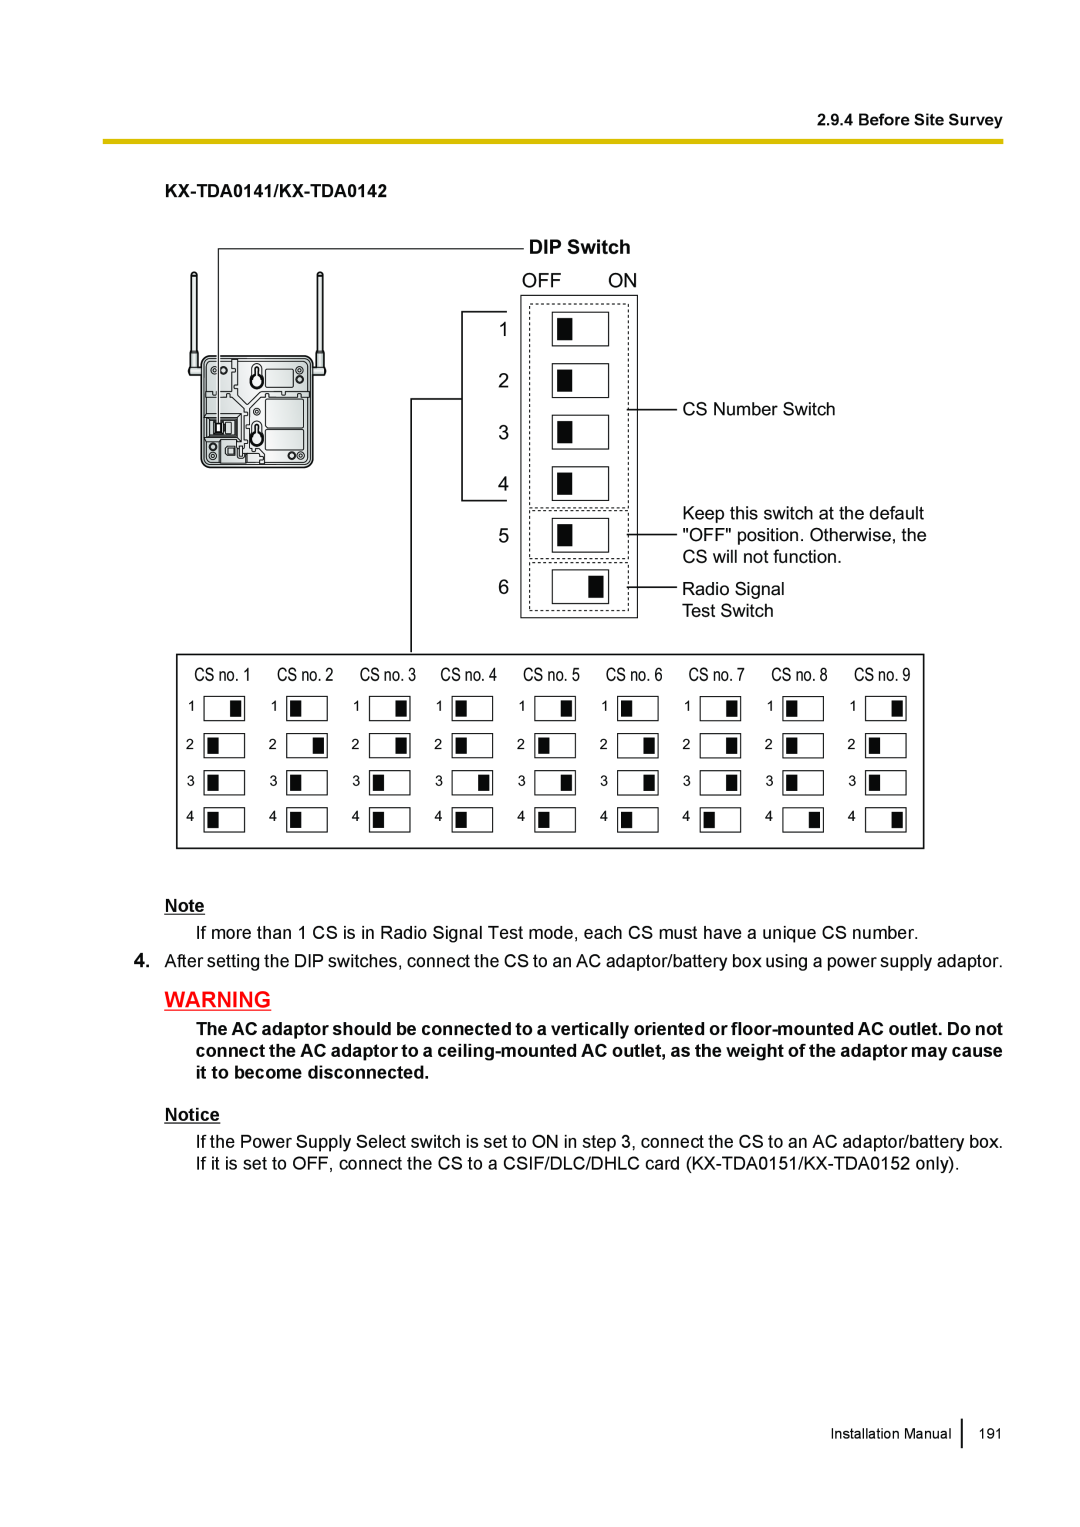 Panasonic KX-TDA100 installation manual DIP Switch, Off On, KX-TDA0141/KX-TDA0142 